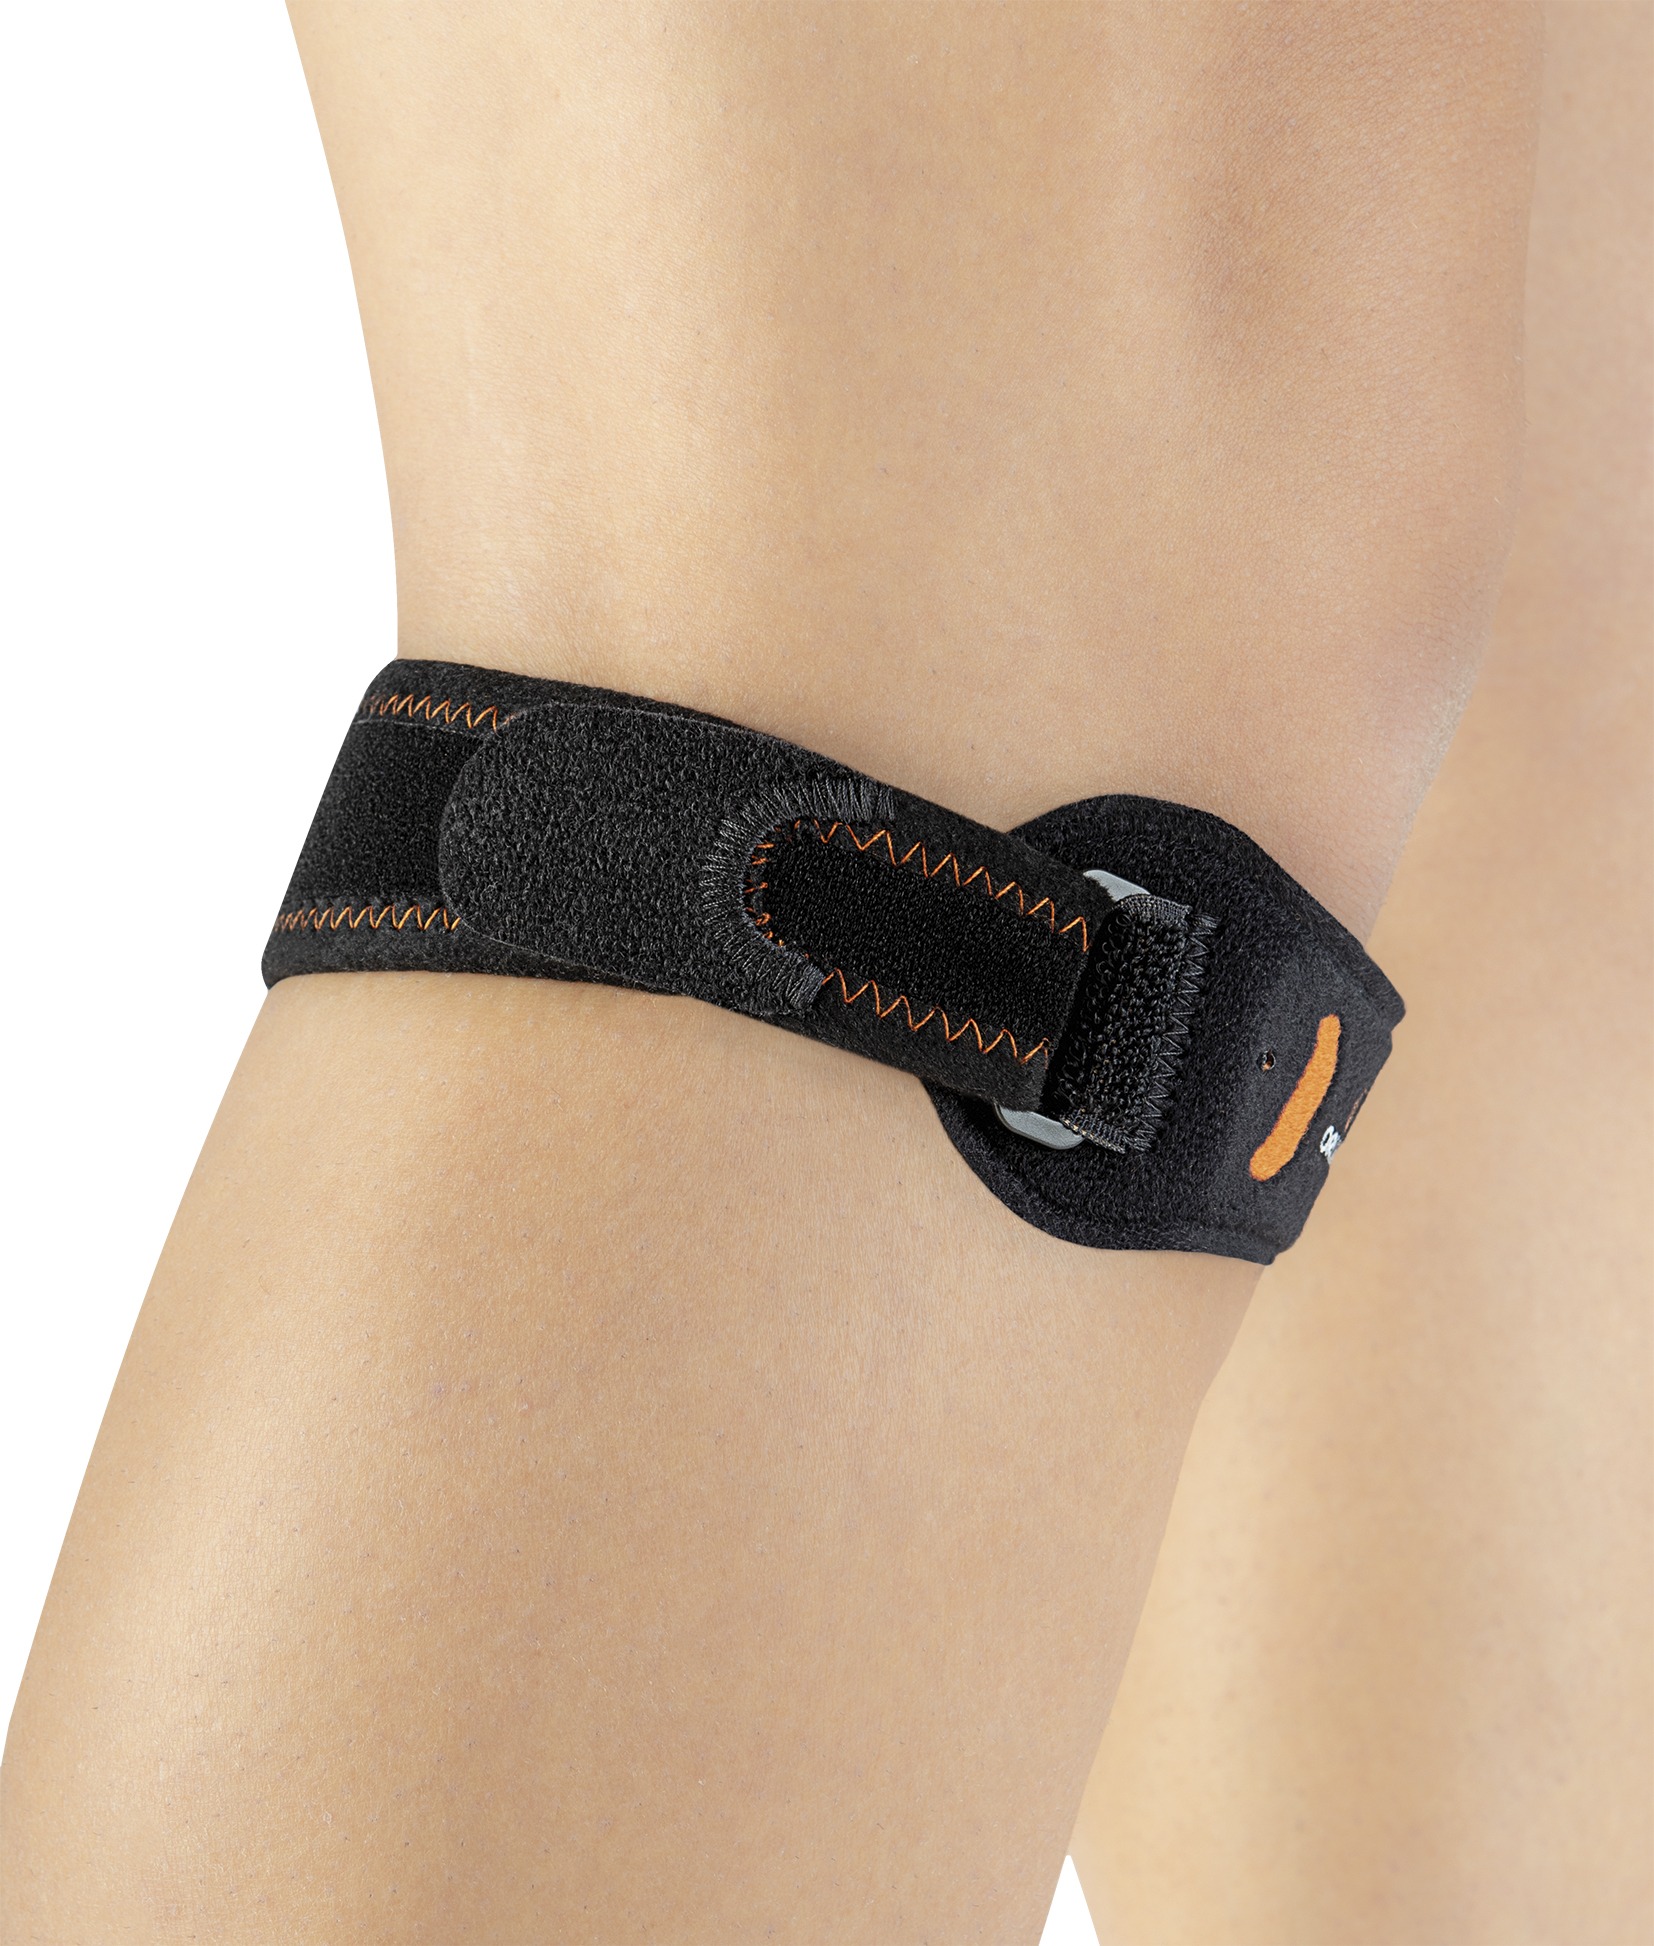 Patellar Knee Band W/ Silicone OS SP-110 Orliman